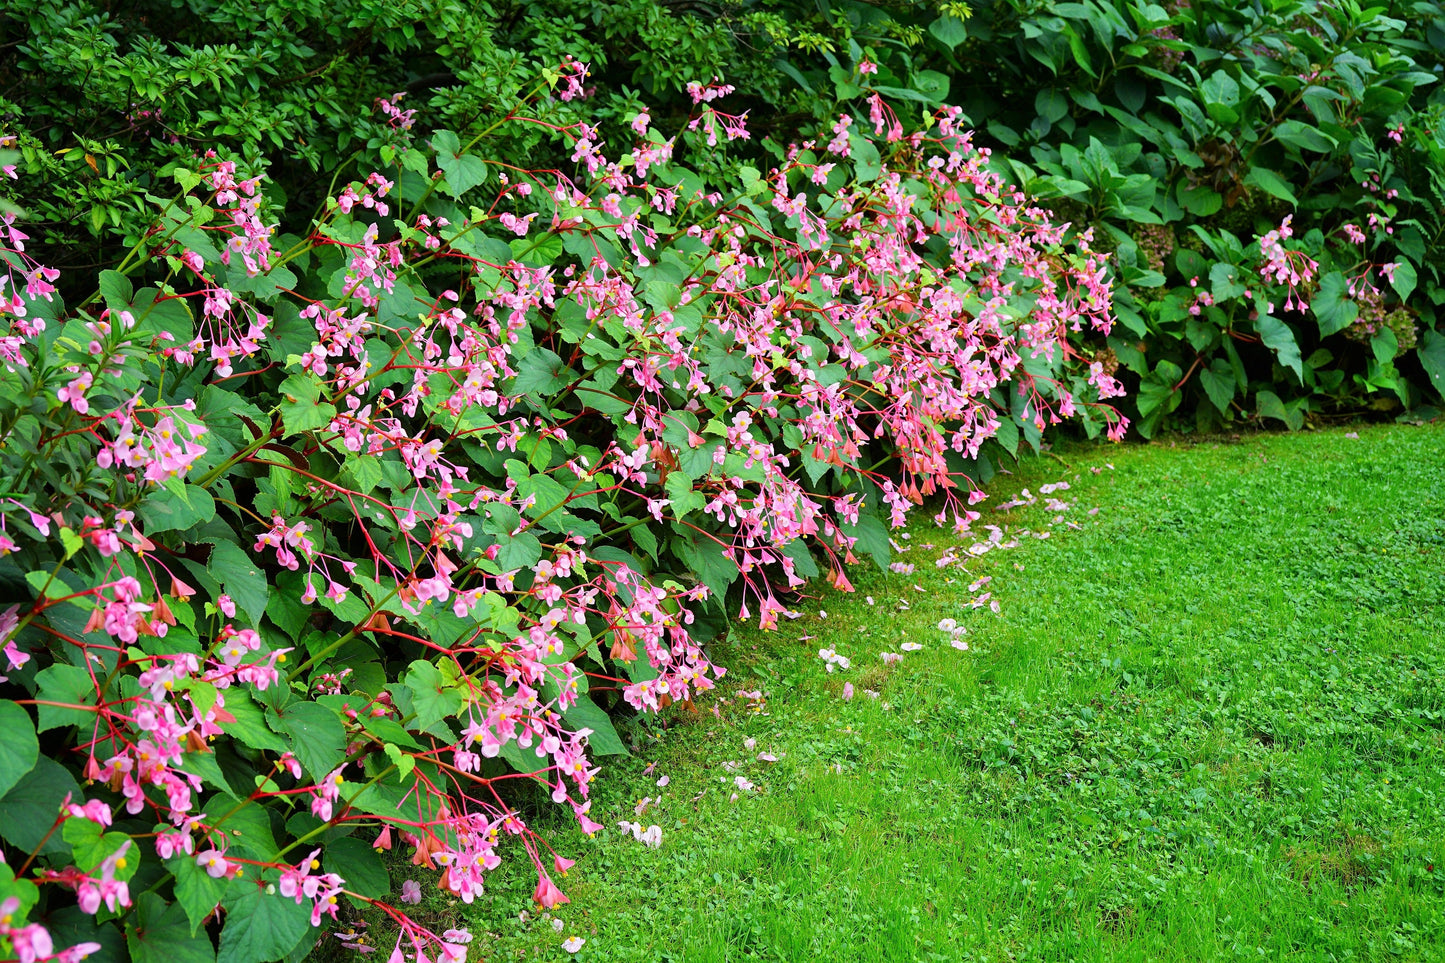 500 BULK HARDY BEGONIA Grandis Rose Pink Perennial Sun - Shade Flower Seeds